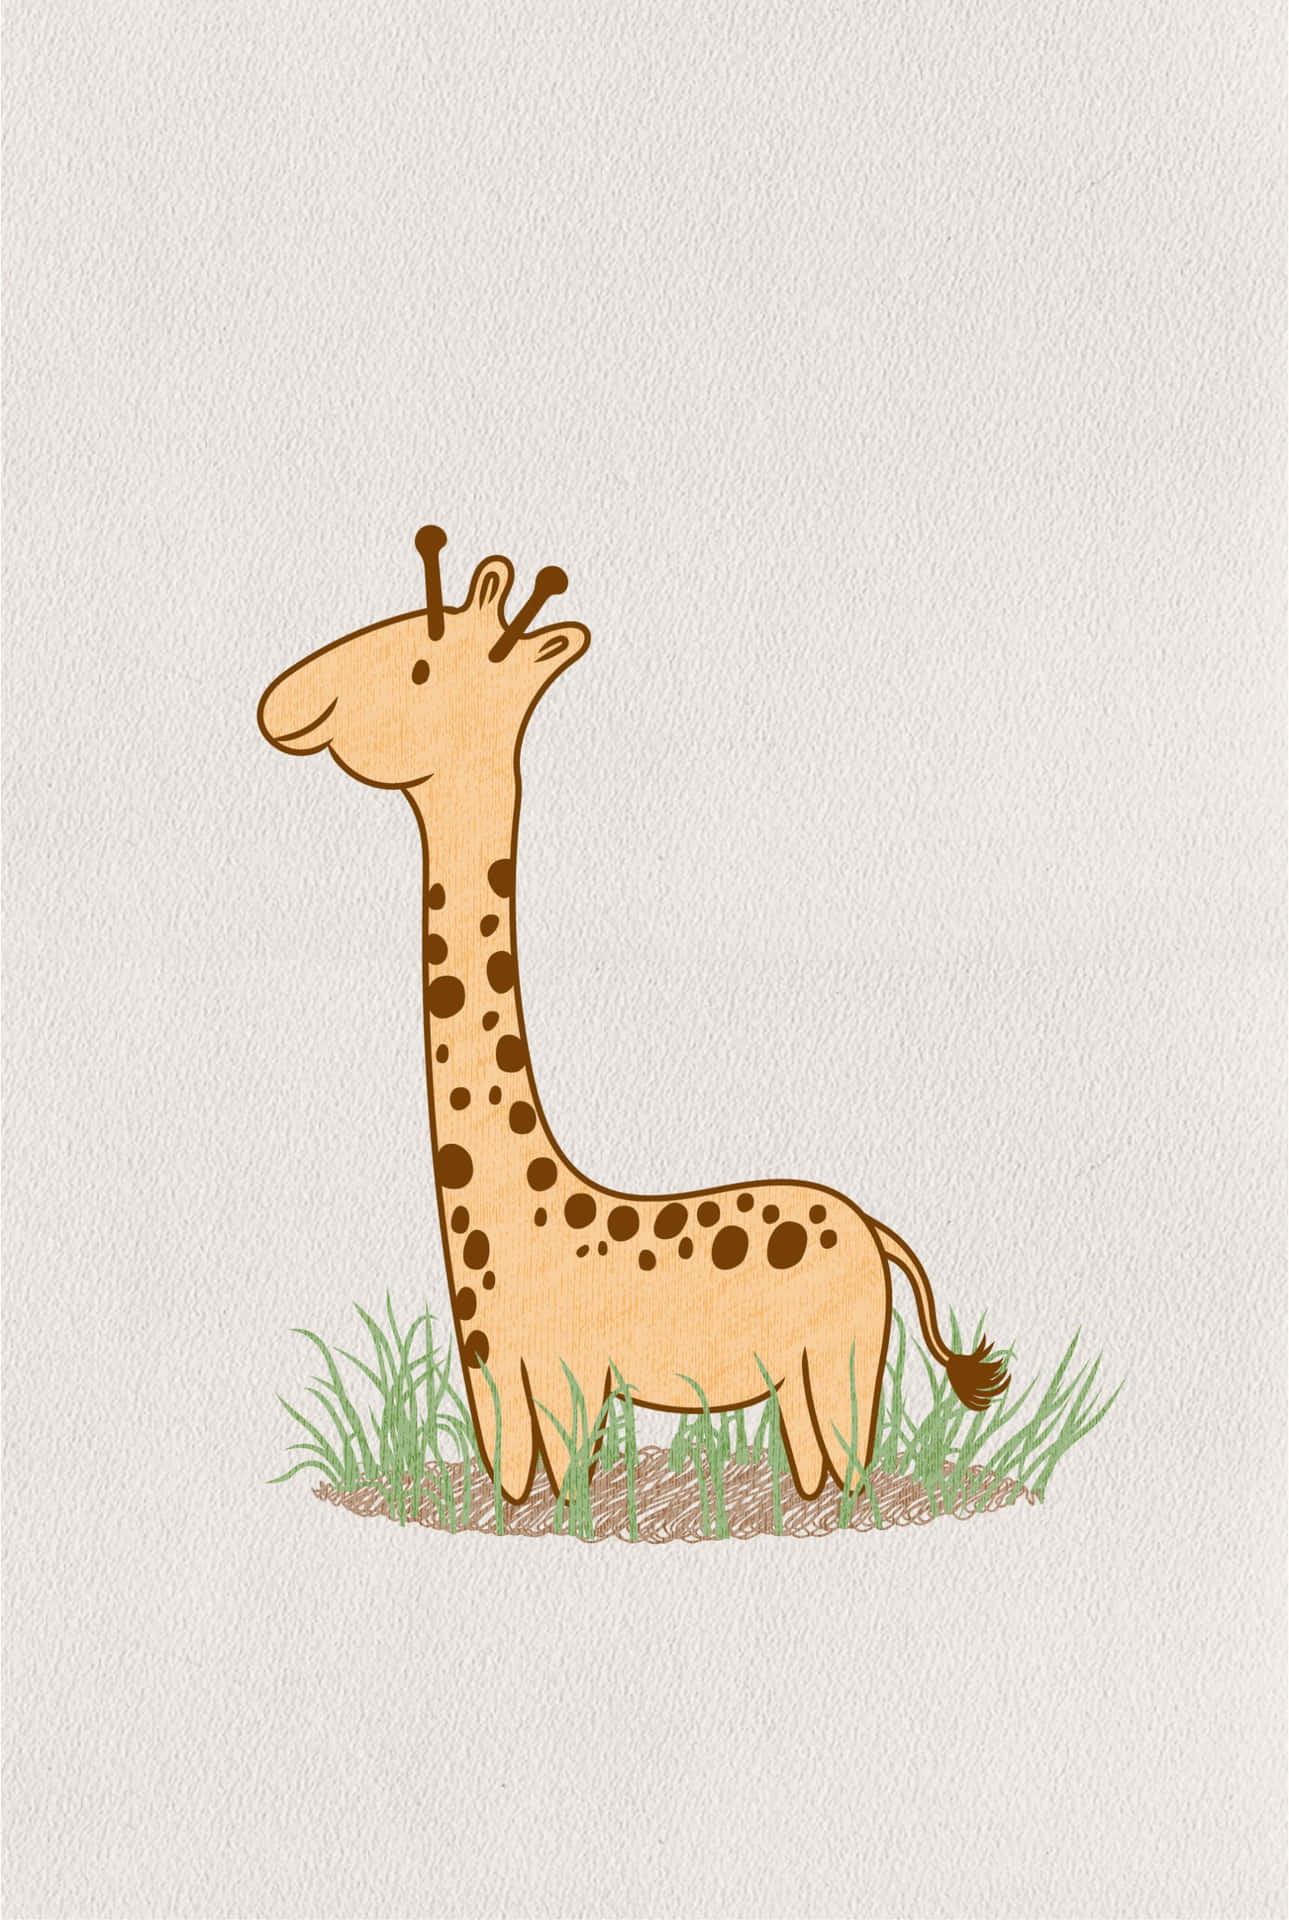 cute giraffe drawings tumblr